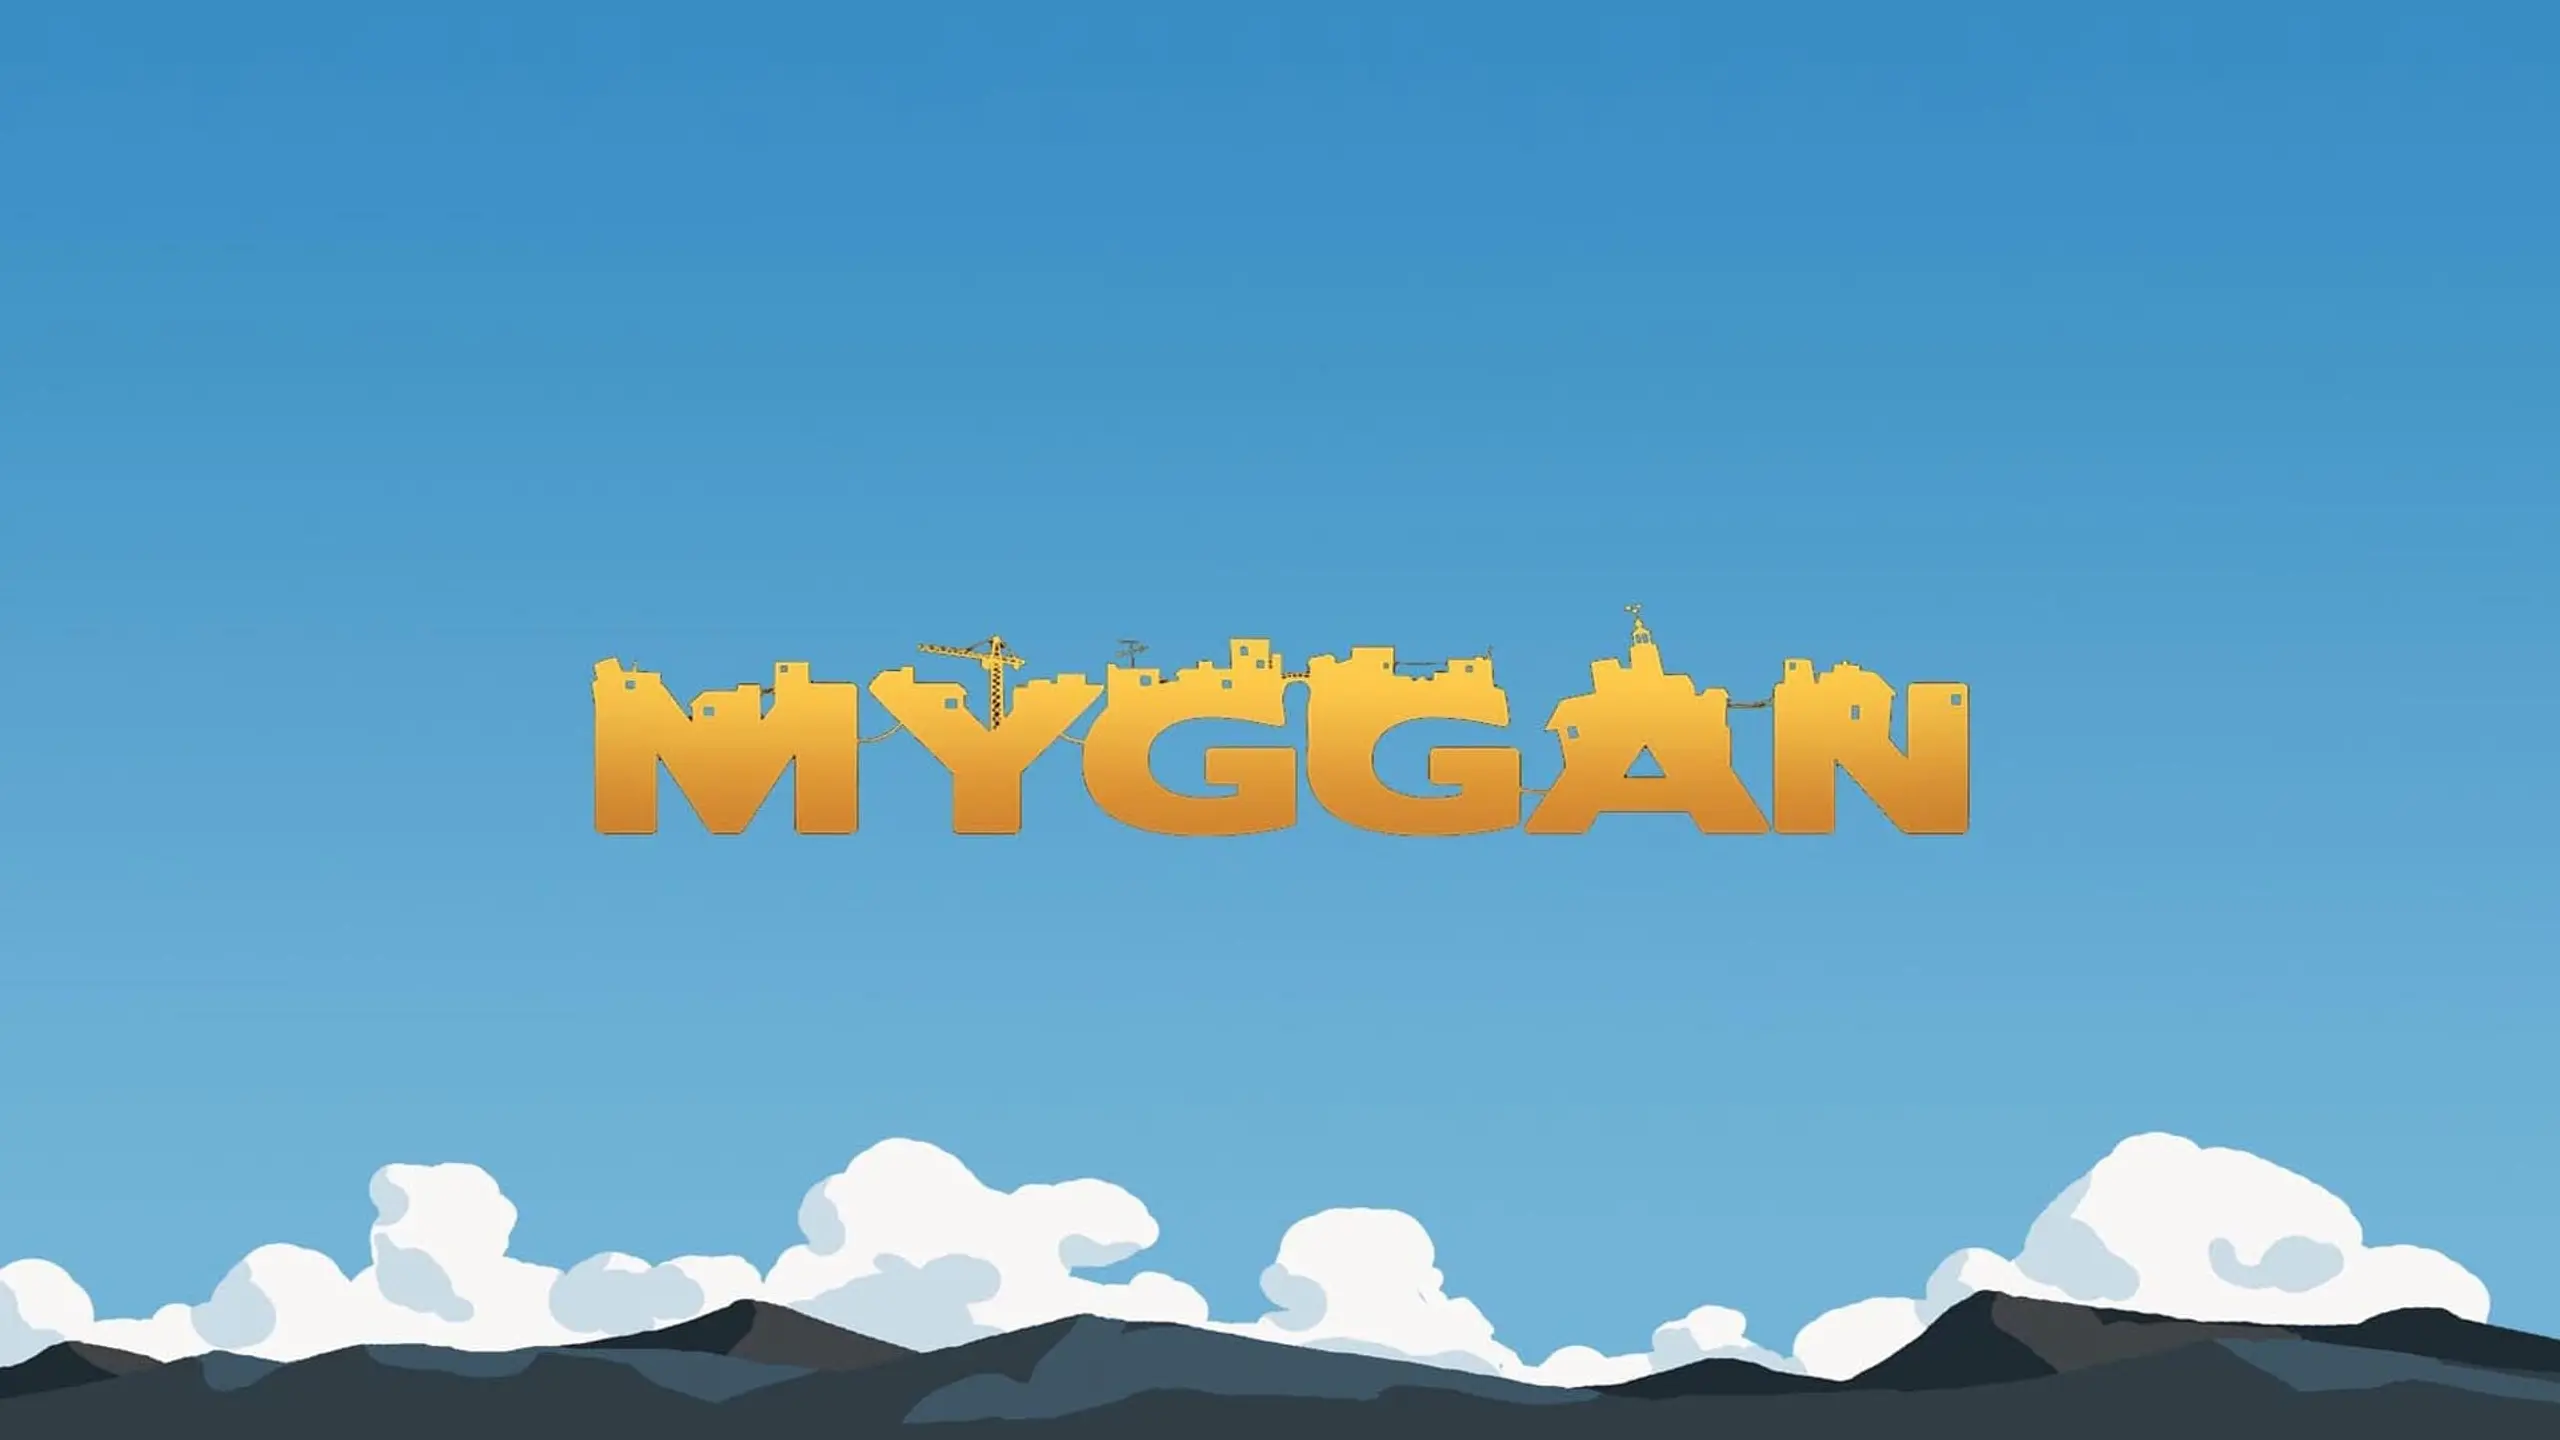 Myggan